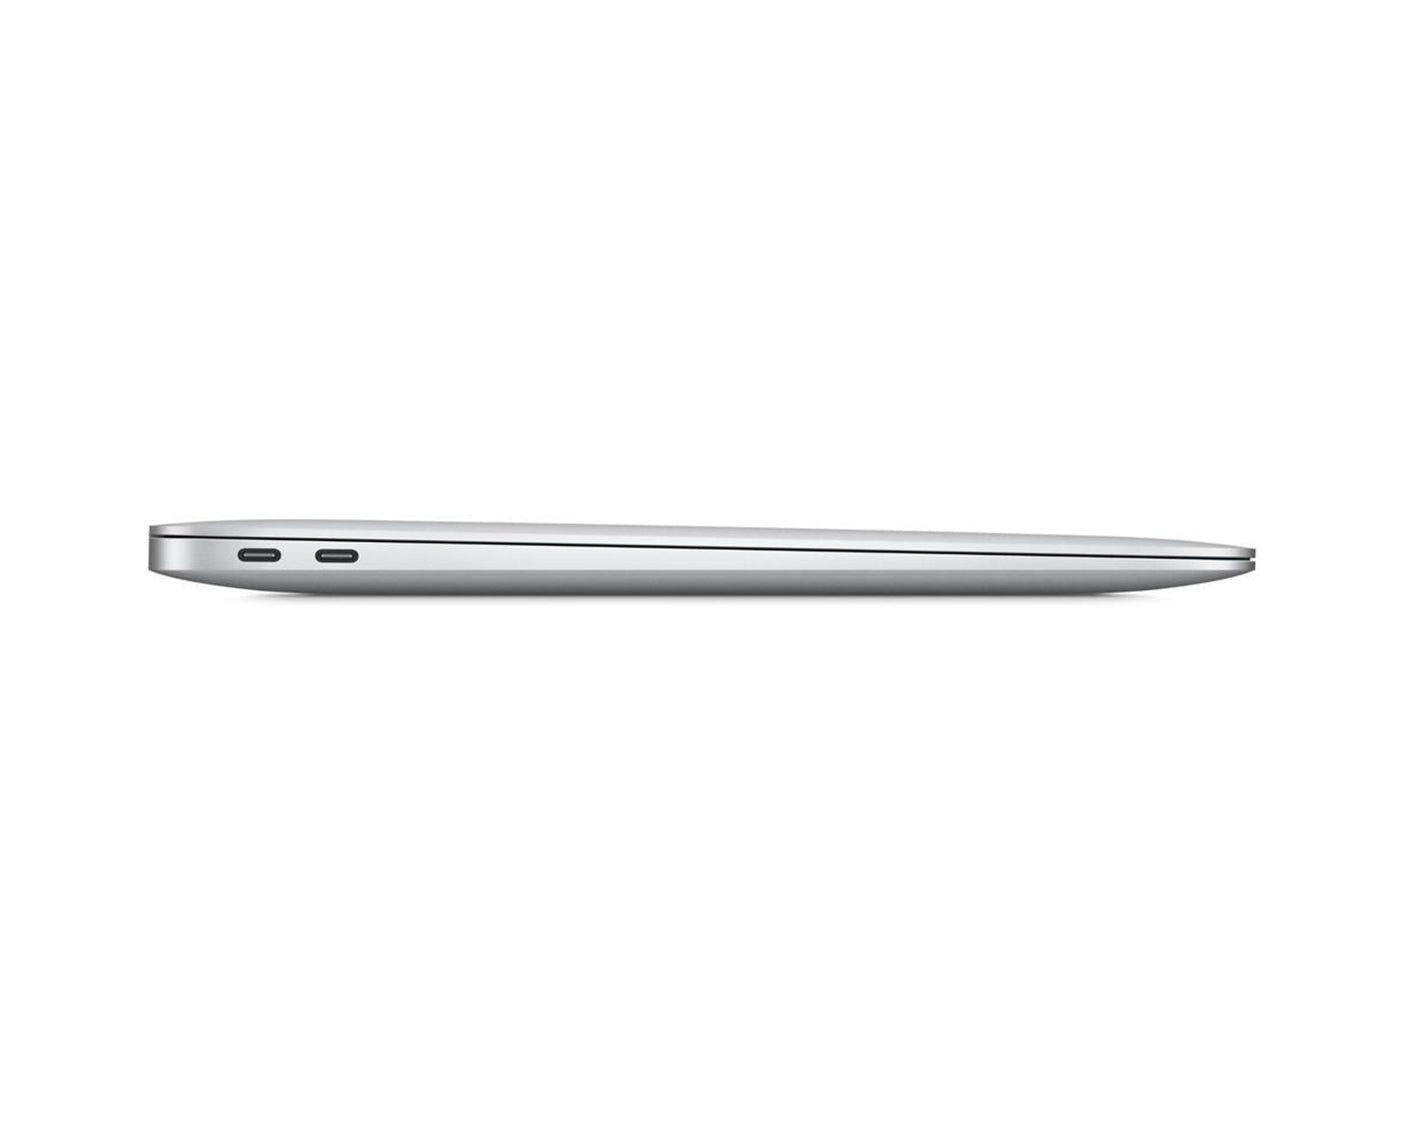 Macbook Air Retina - Current - M1 - 8GB - Silver